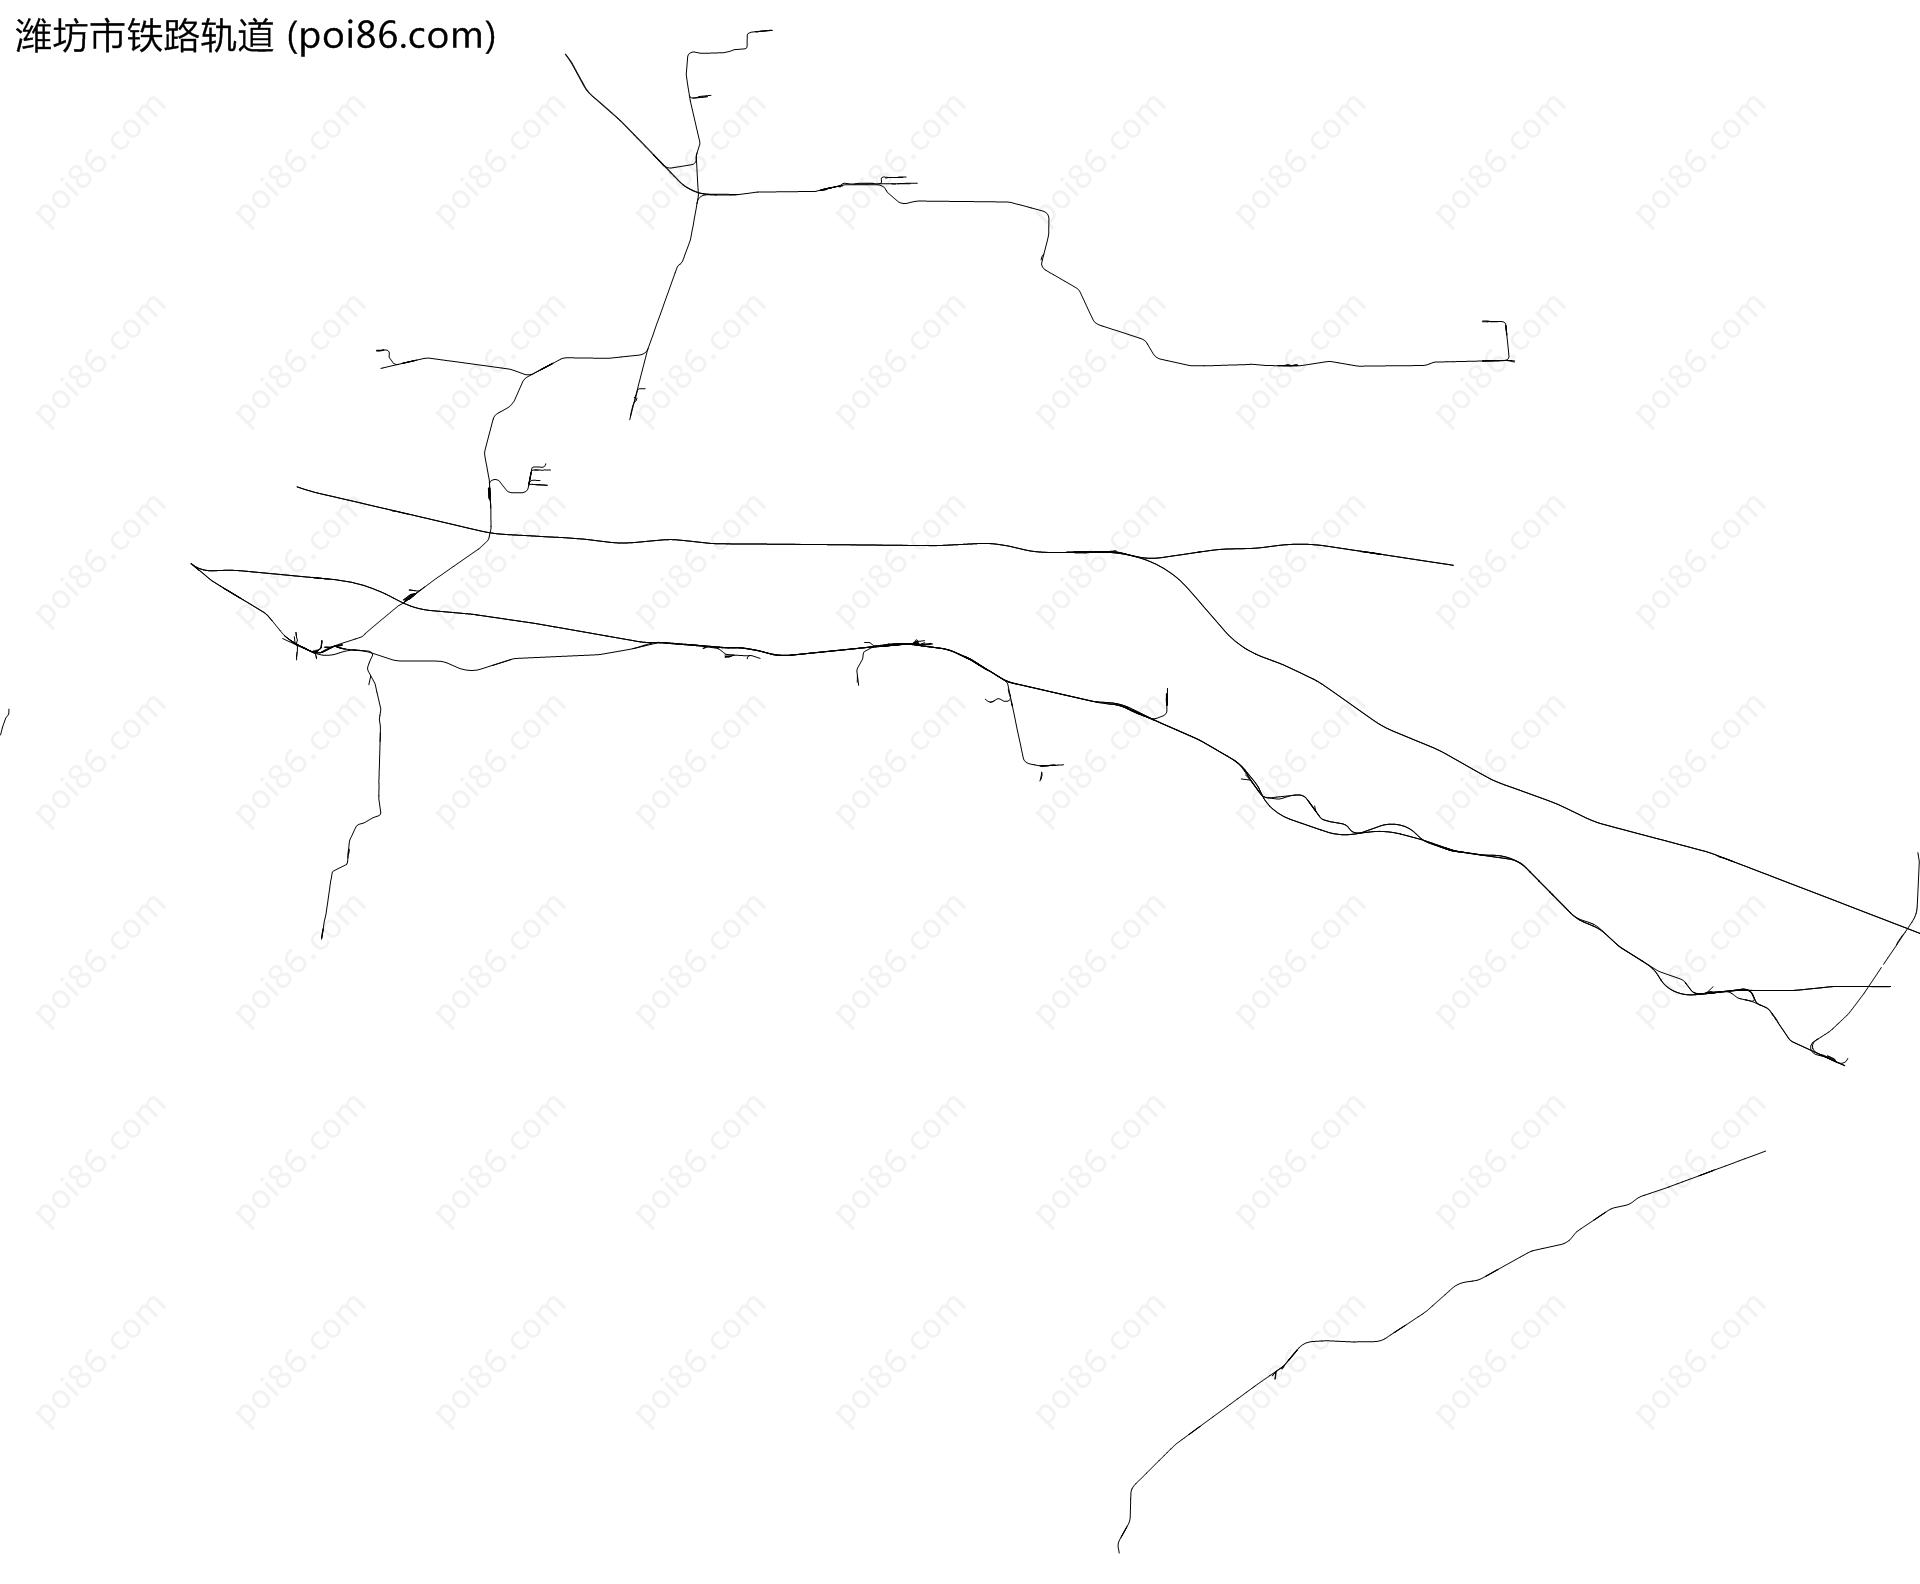 潍坊市铁路轨道地图